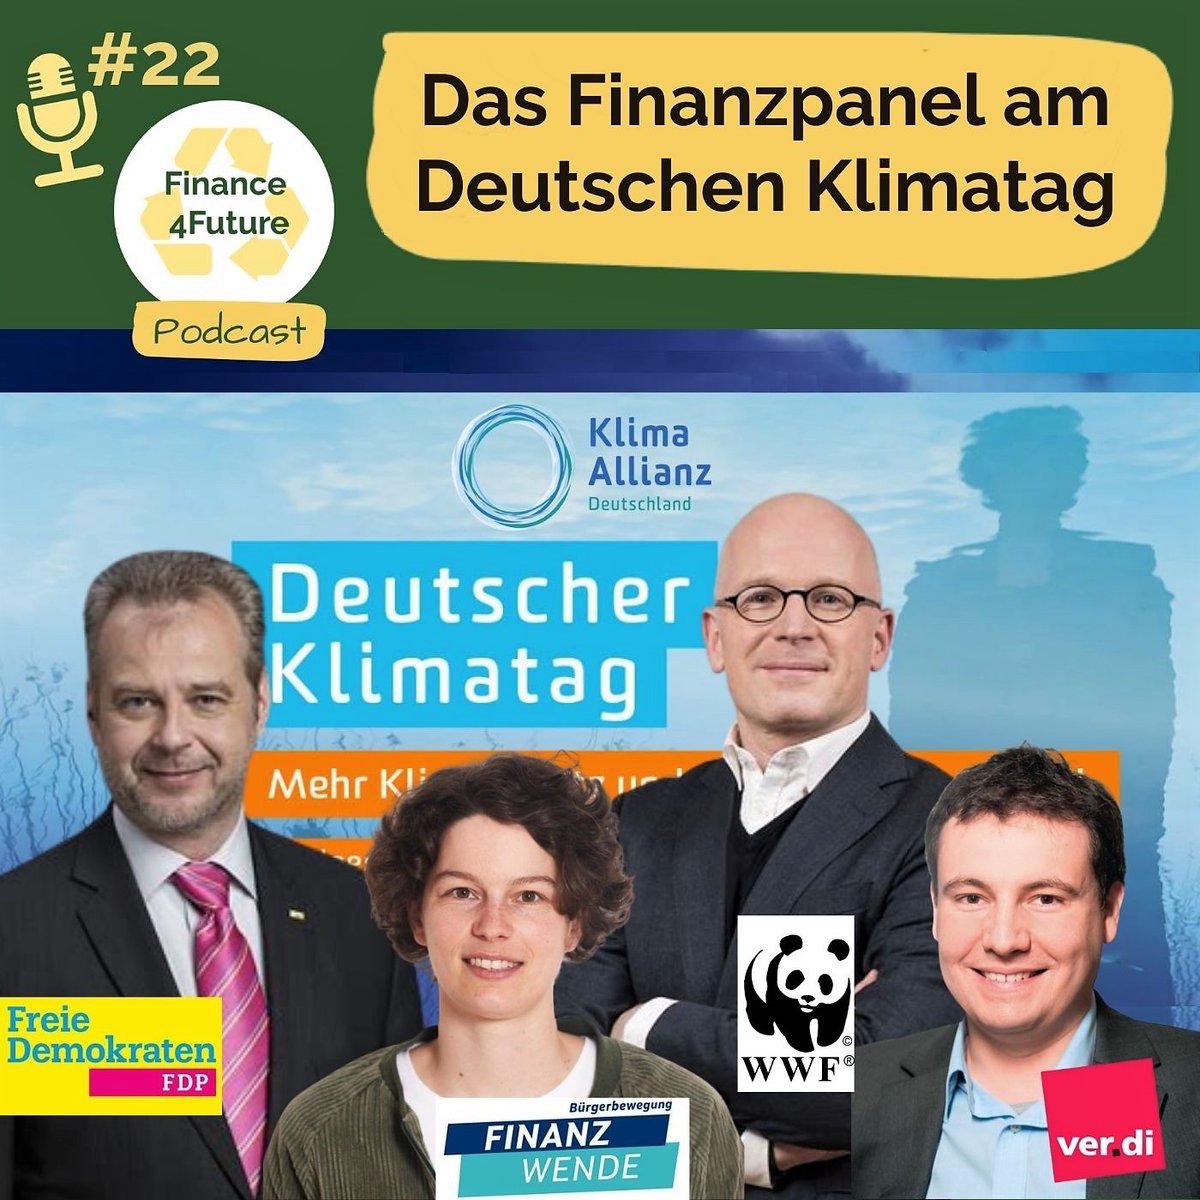 Beim Deutschen Klimatag #klimatag22 hat Niklas Krämer von #Finance4Future die Paneldiskussion #Finanzen verfolgt und daraus eine Podcastfolge gemacht. Absolute Hörempfehlung!

Jetzt überall, wo es Podcasts gibt, z.B.
Spotify: lnkd.in/gFgN5egw
Apple: lnkd.in/g-kaqa4d